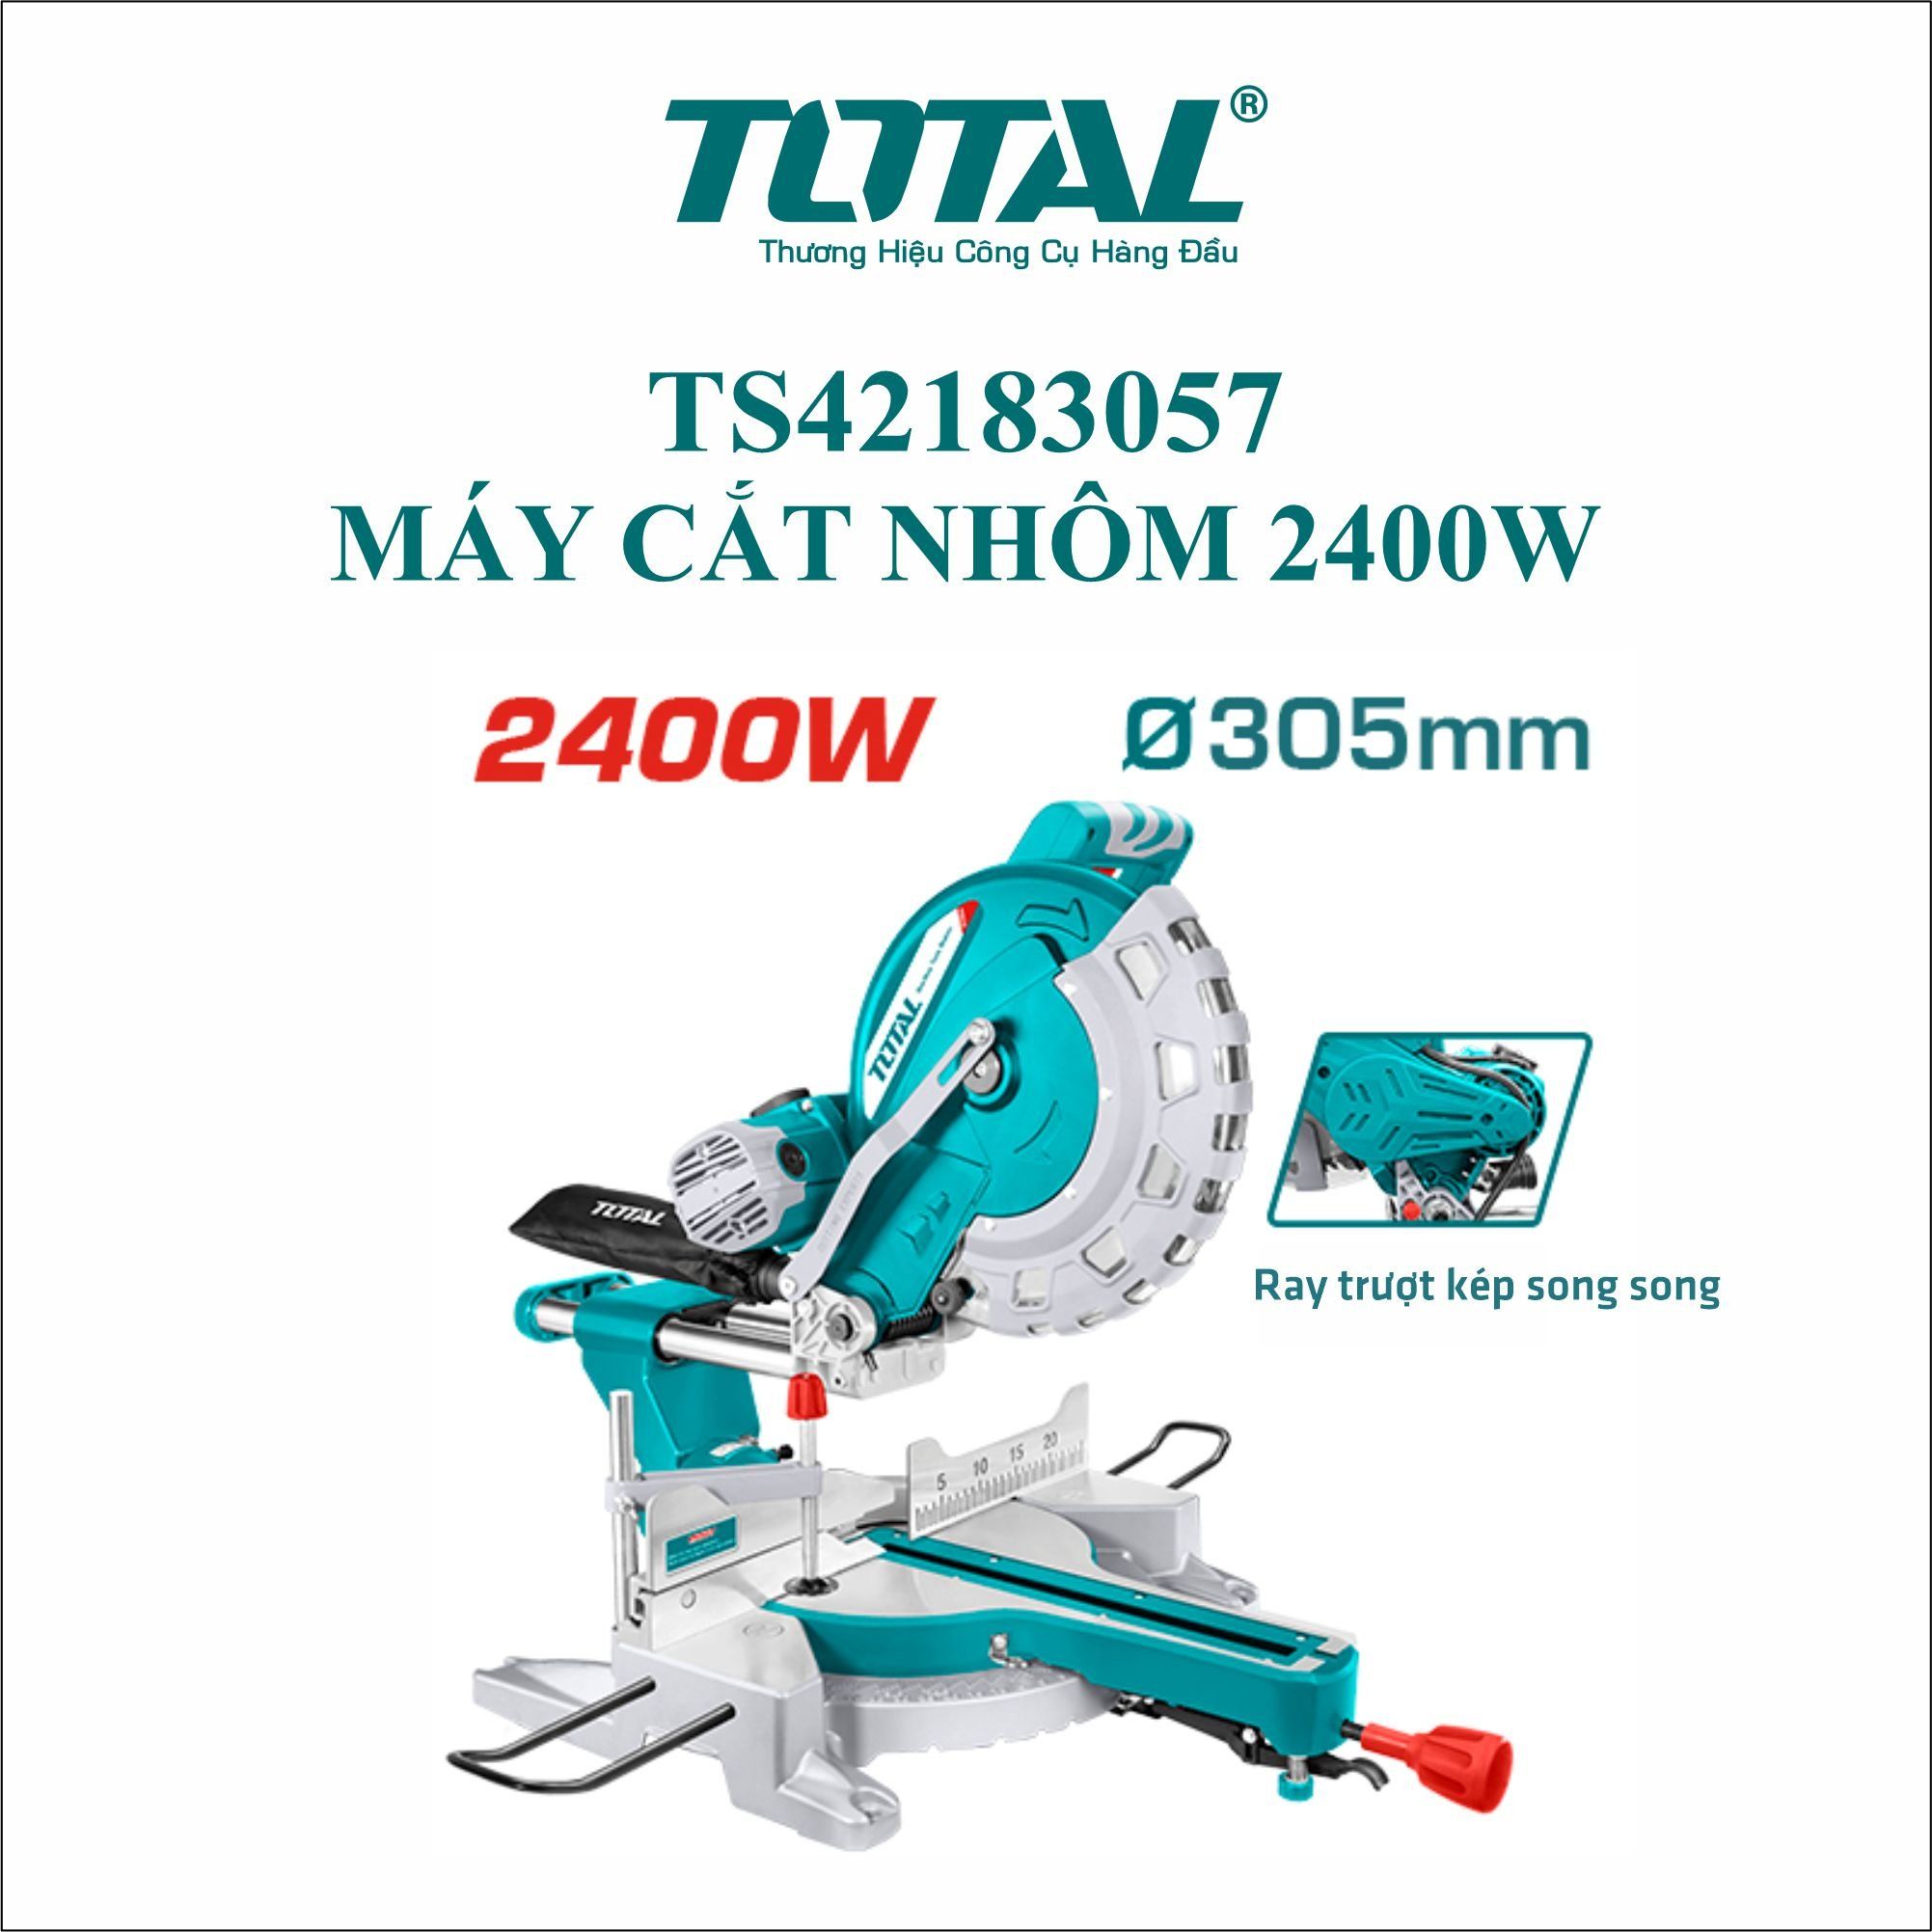  Máy cắt nhôm 2400W/ 305mm Total TS42183057 